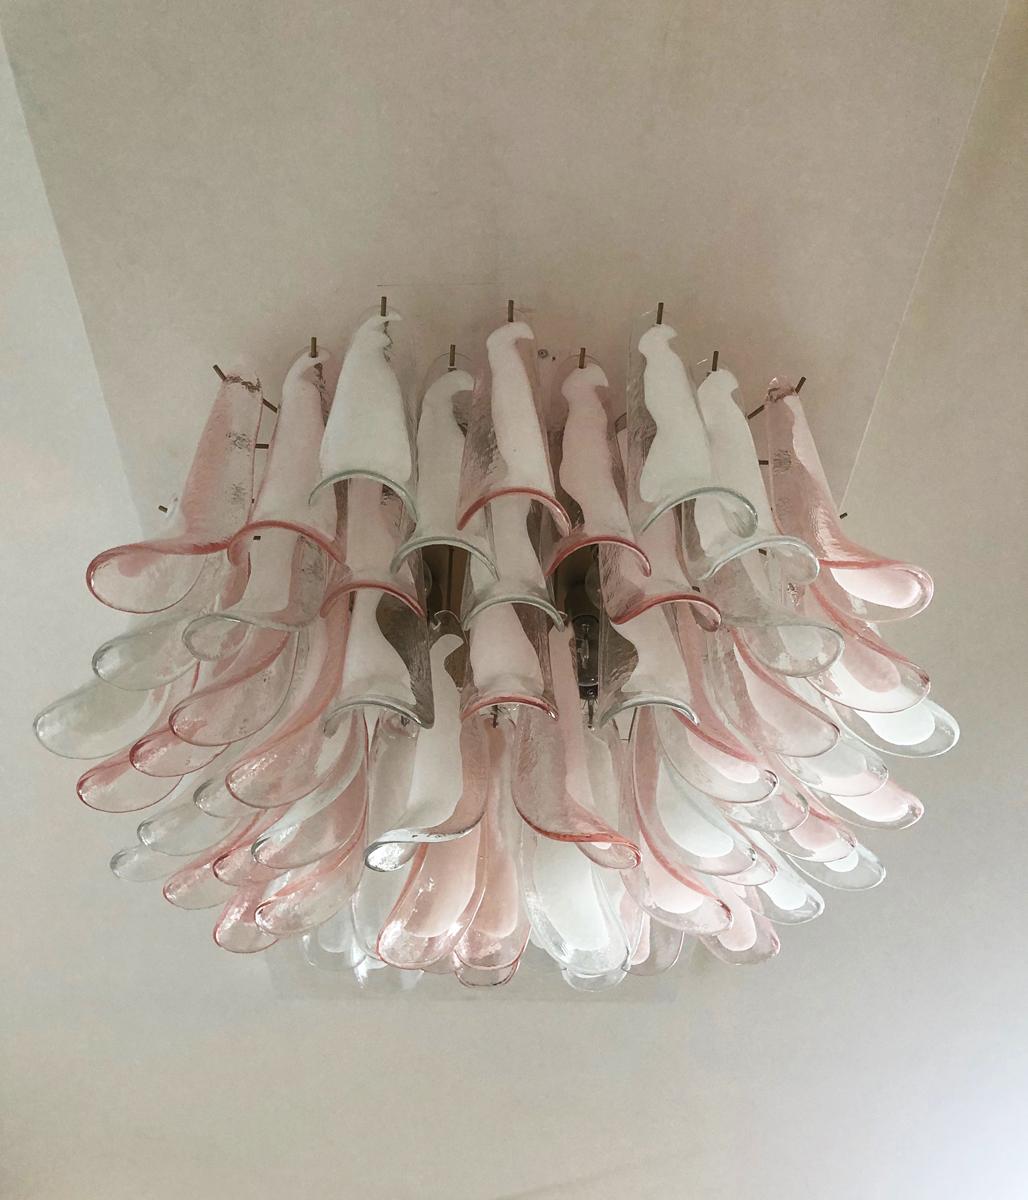 Murano Ceiling Lamp, 64 Trasparent and Pink Lattimo Glass Petal In Good Condition For Sale In Gaiarine Frazione Francenigo (TV), IT